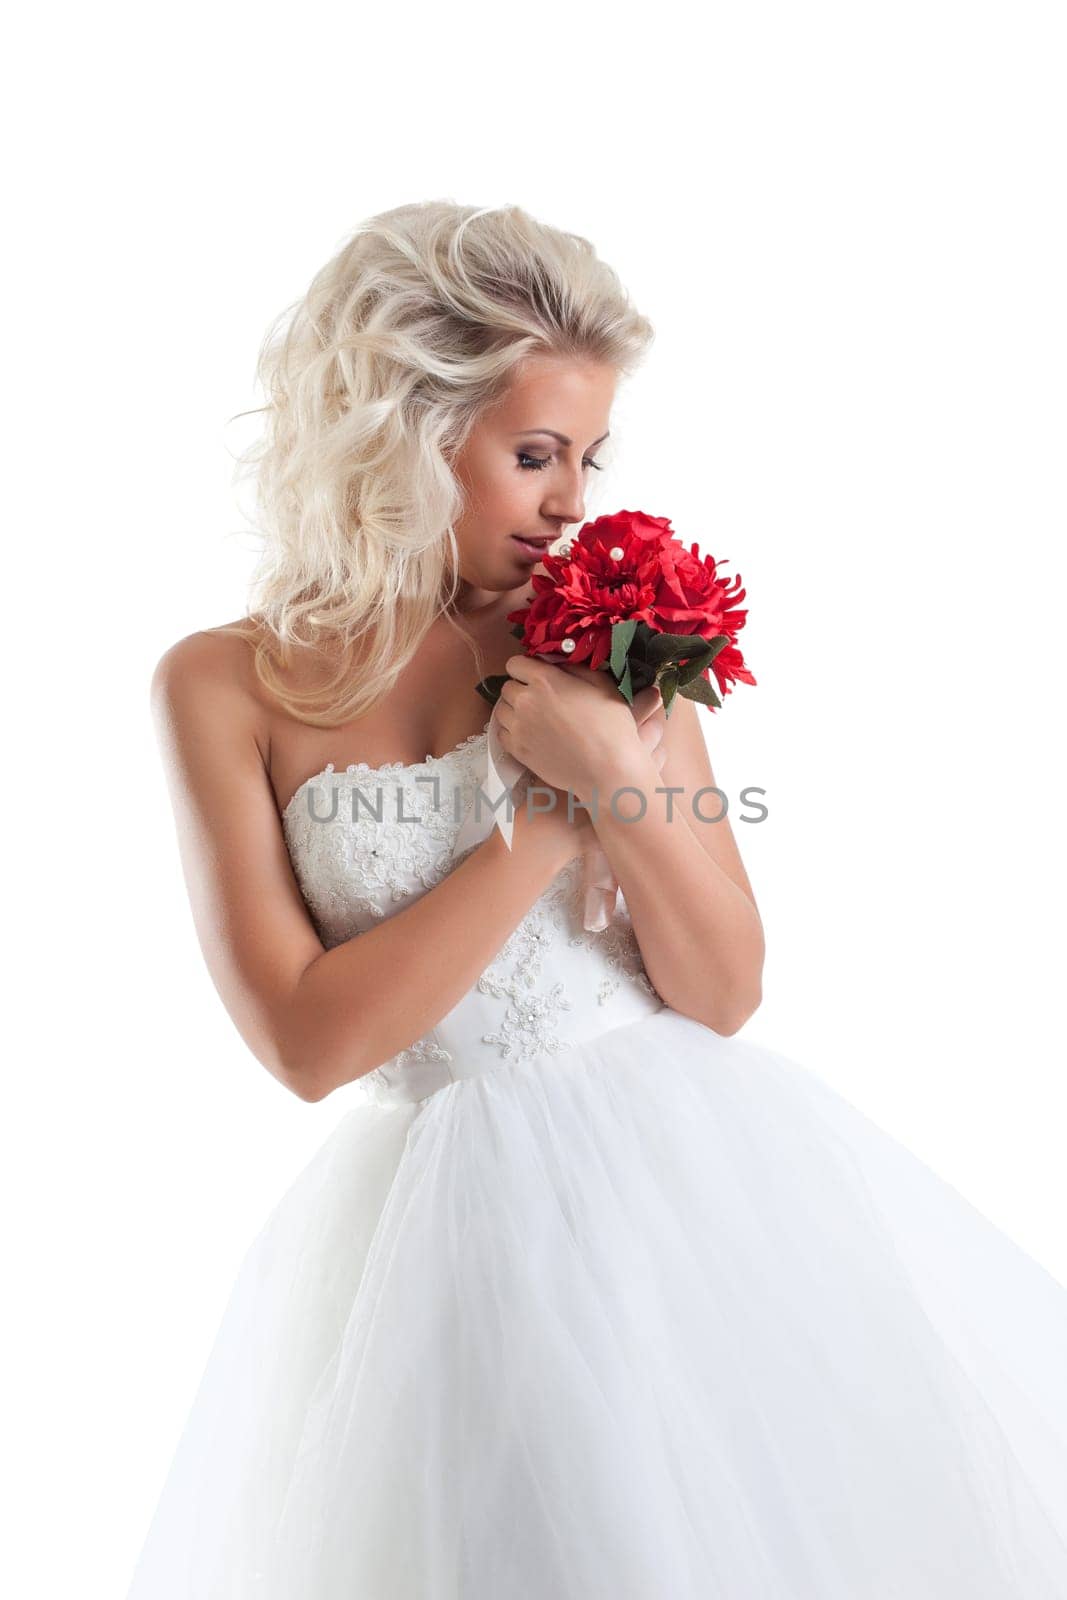 Romantic blond bride cuddles bouquet by rivertime